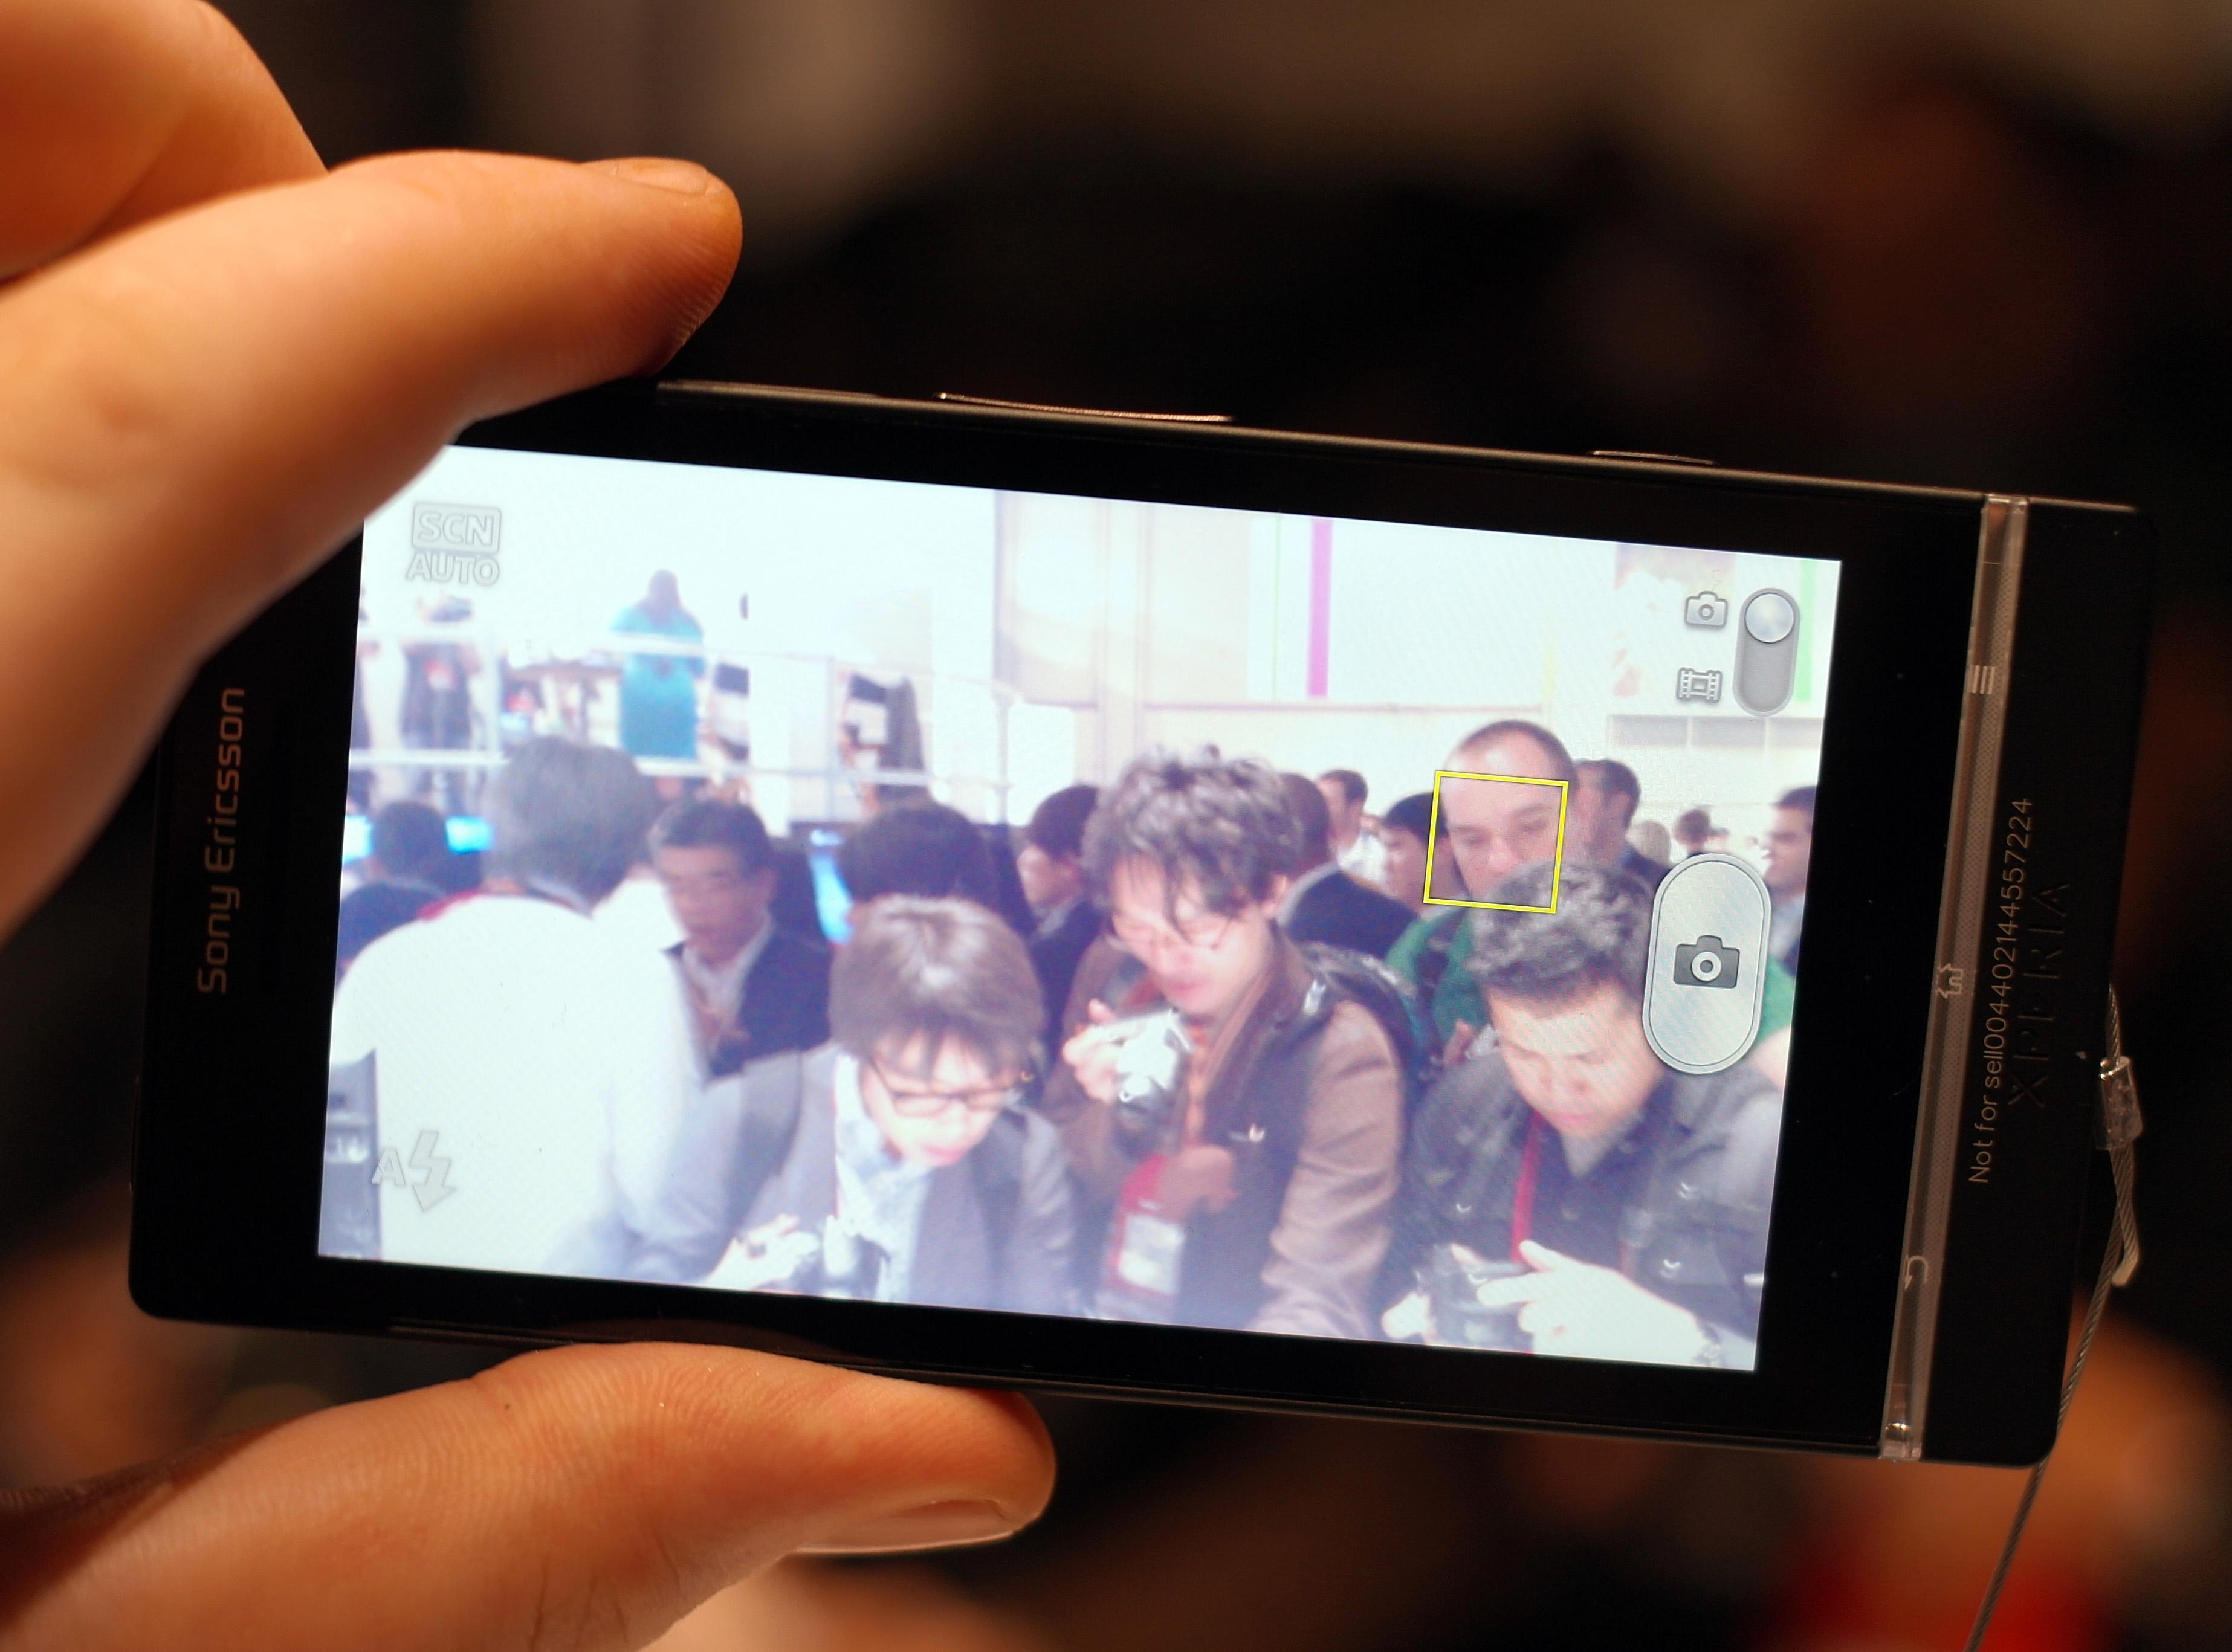 Xperia S har som de fleste tidligere Xperia-modeller ansiktsgjenkjenning i kamera-appen. Denne funksjonen er i ferd med å bli standard for Android-telefoner når Android 4.0 blir tilgjengelig i flere modeller.